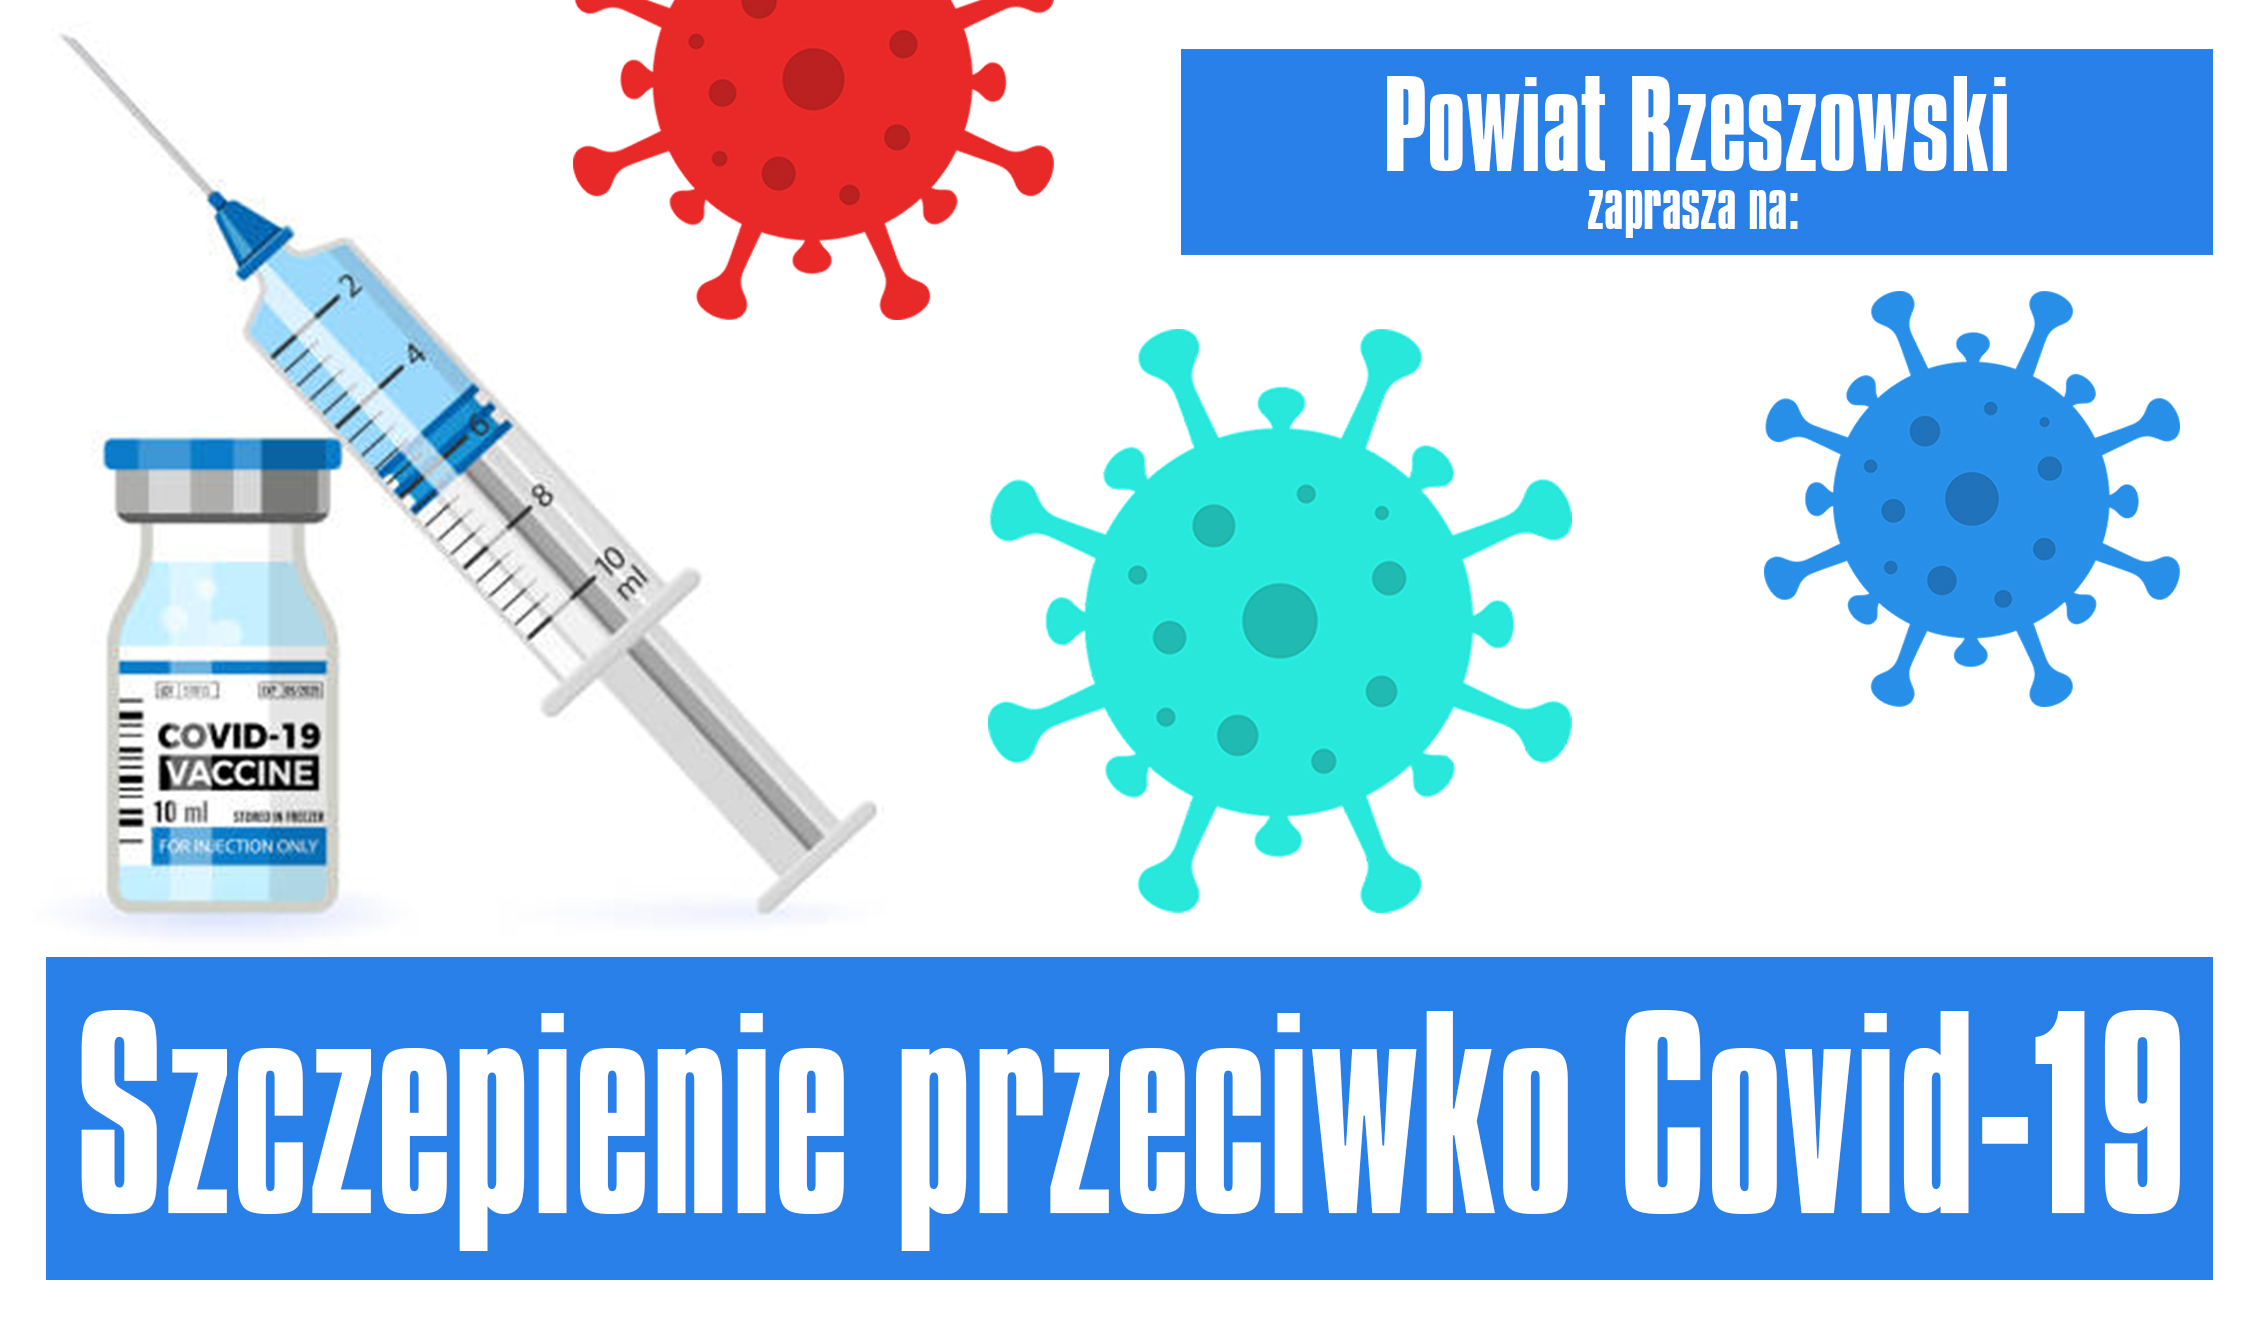 POWIAT RZESZOWSKI - zaproszenie do szczepień przeciwko covid-19